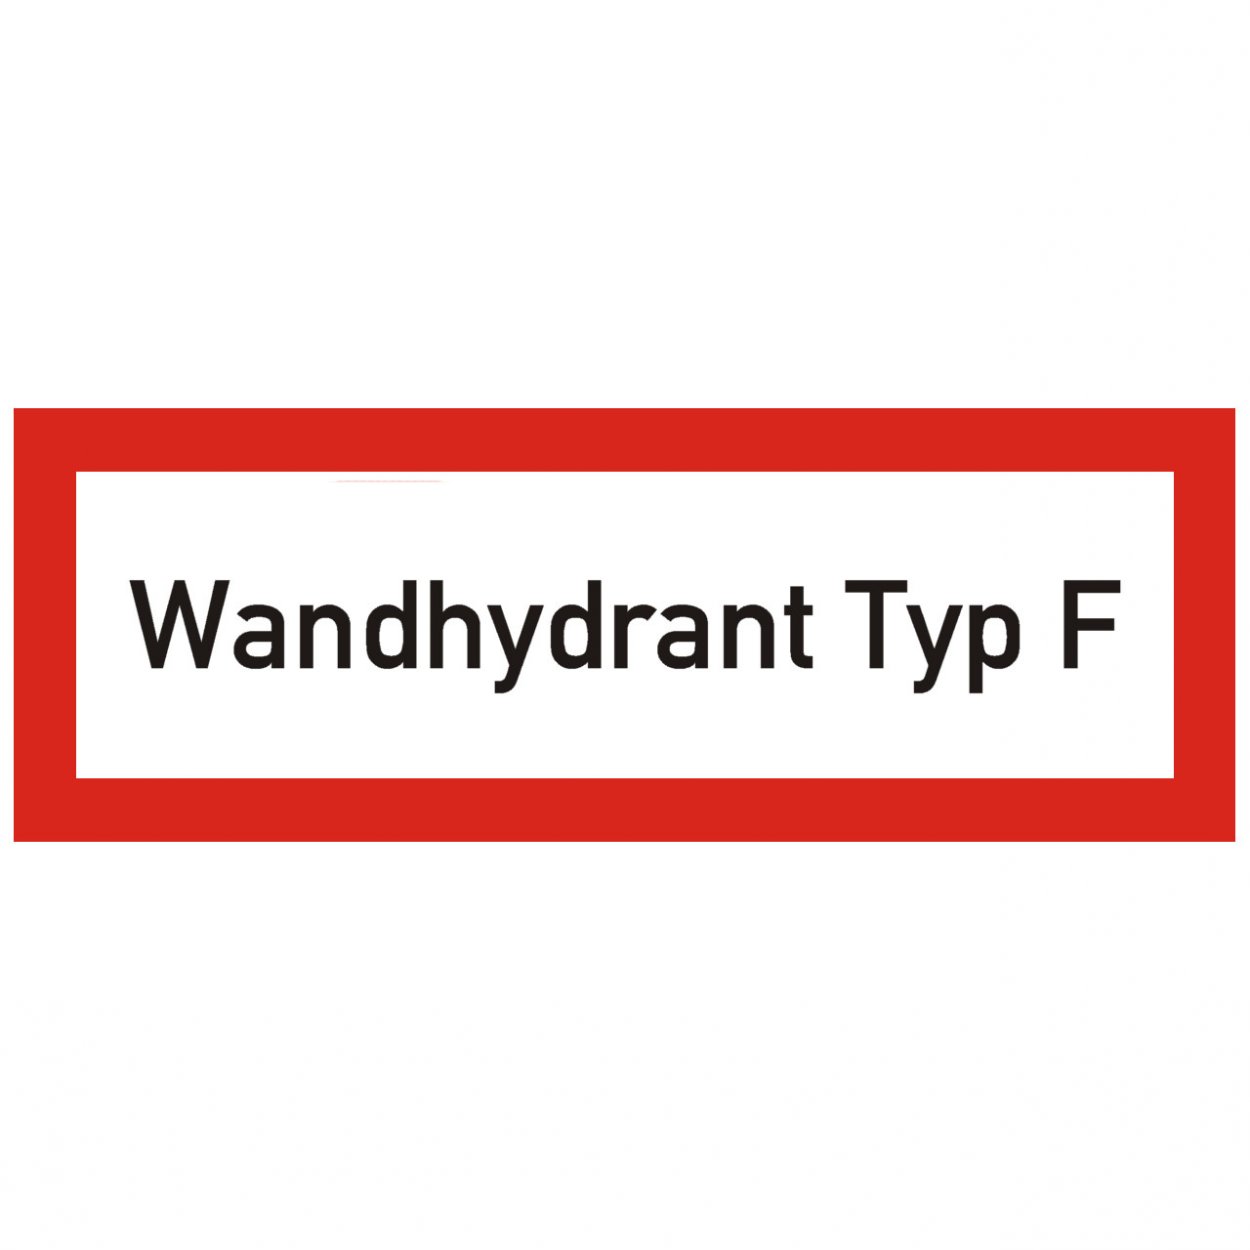 Aufkleber "Wandhydrant Typ F" nach DIN 14461 Brandschutzzeichen Schild 297x105mm